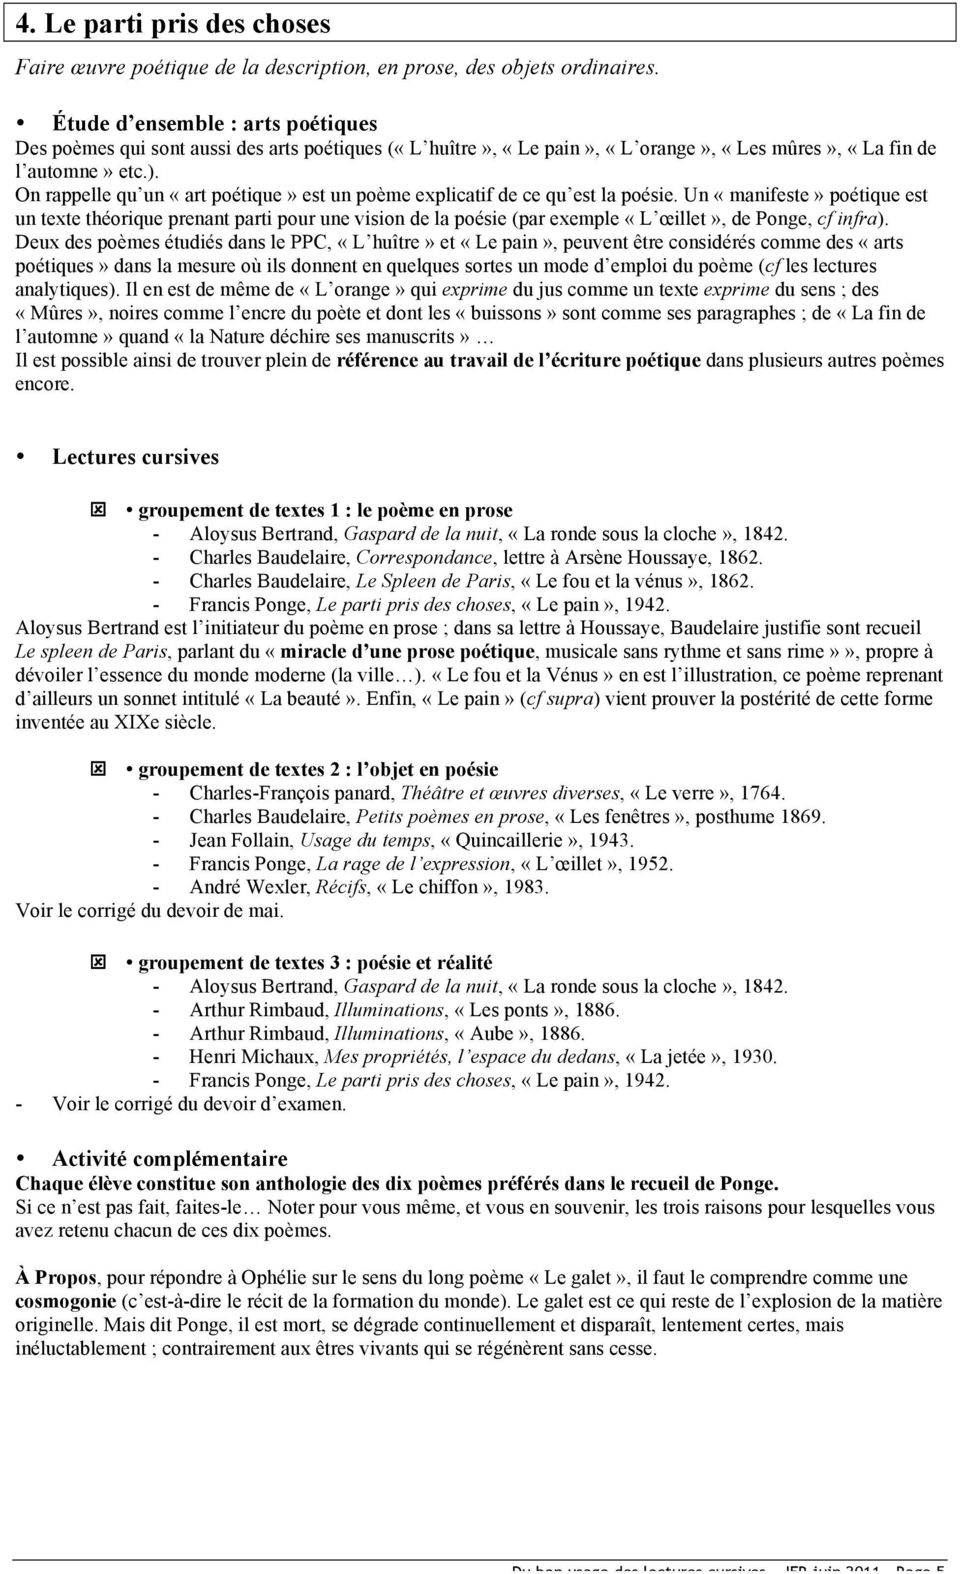 Lecture Cursive Le Parti Pris Des Choses Du bon usage des lectures cursives à l oral du bac - PDF Free Download